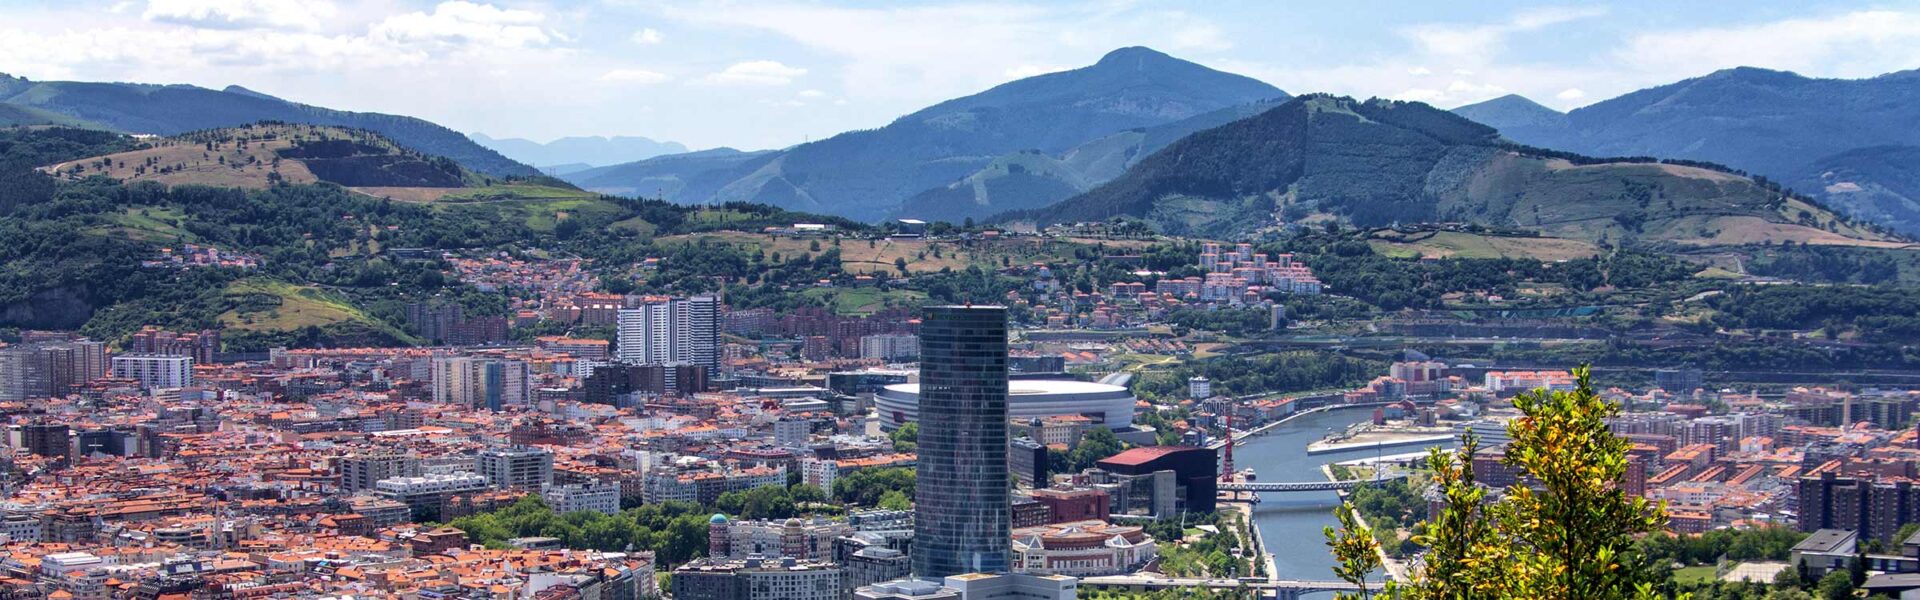 aerial view of Bilbao Spain